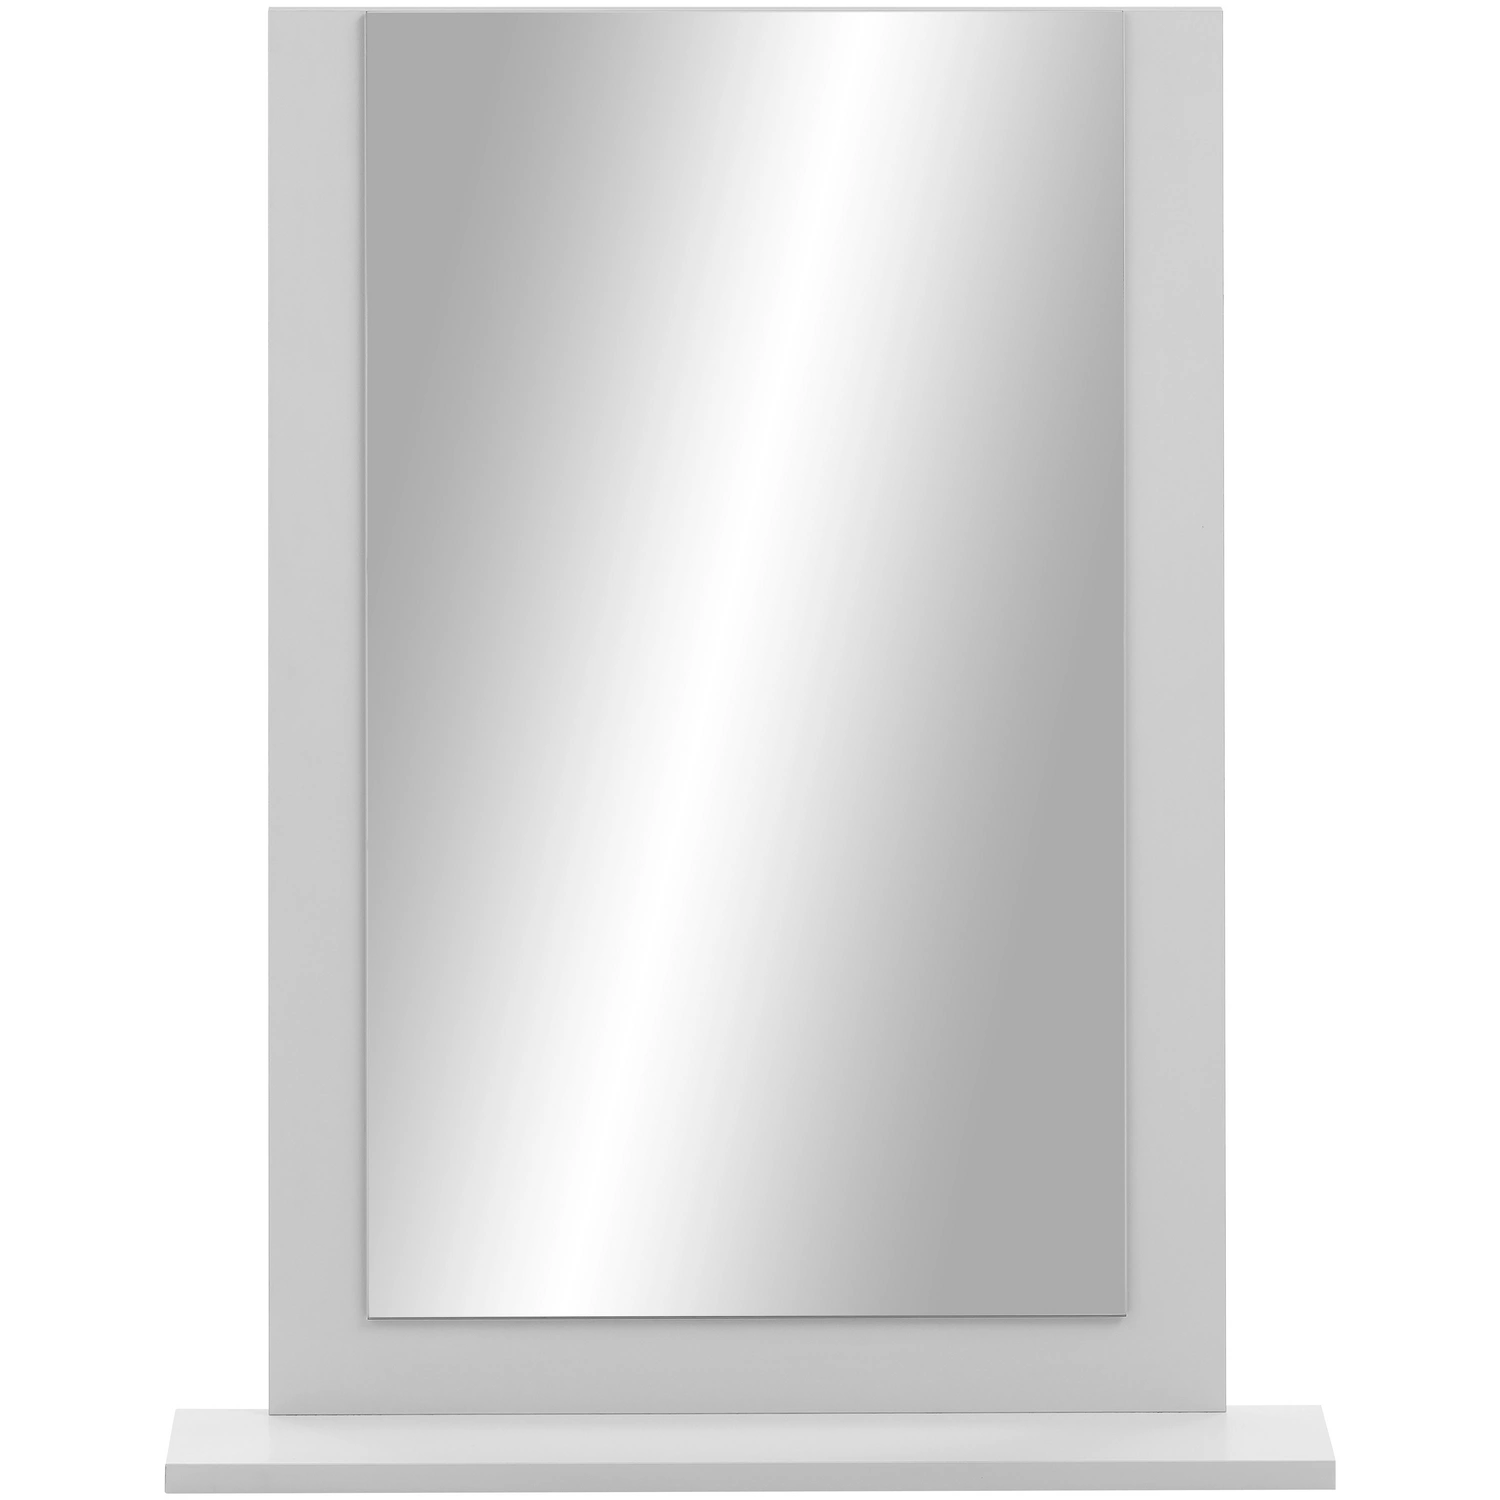 SCHILDMEYER Spiegel »Jonte«, rechteckig, BxH: 60 x 77,1 cm, kreideweiß